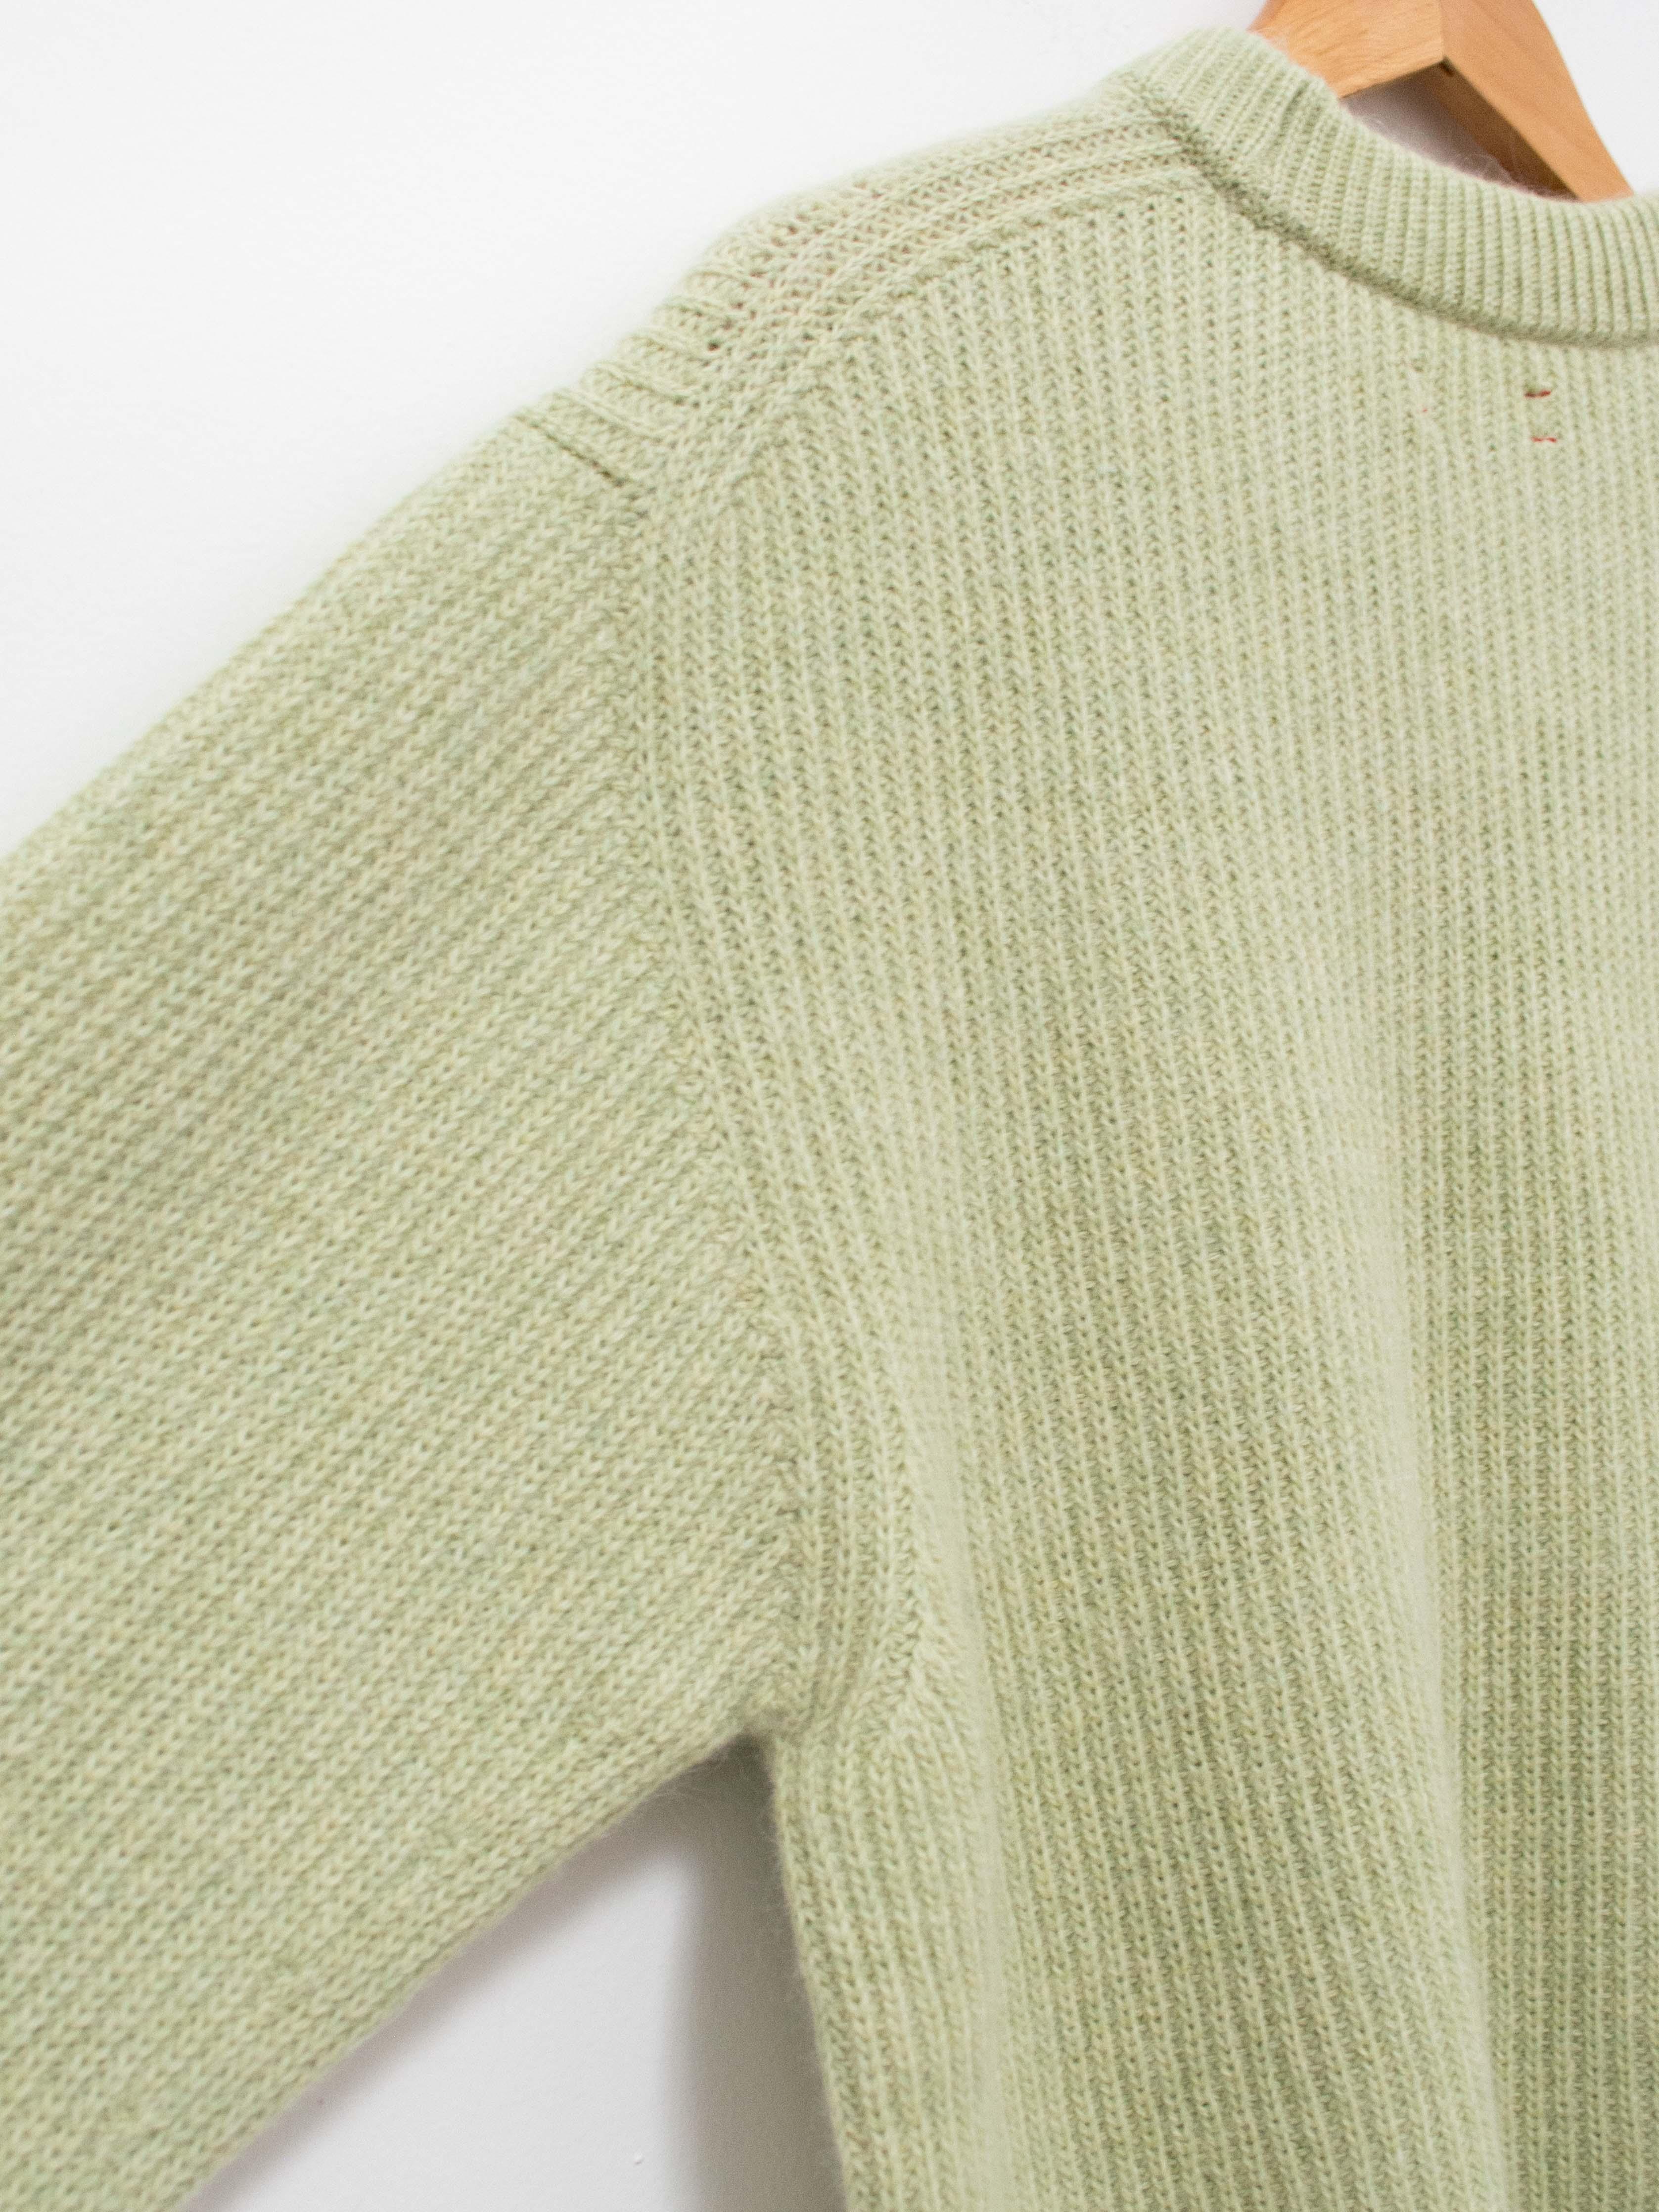 マリナボーダー アンフィルroyal baby alpaca sweater セーター